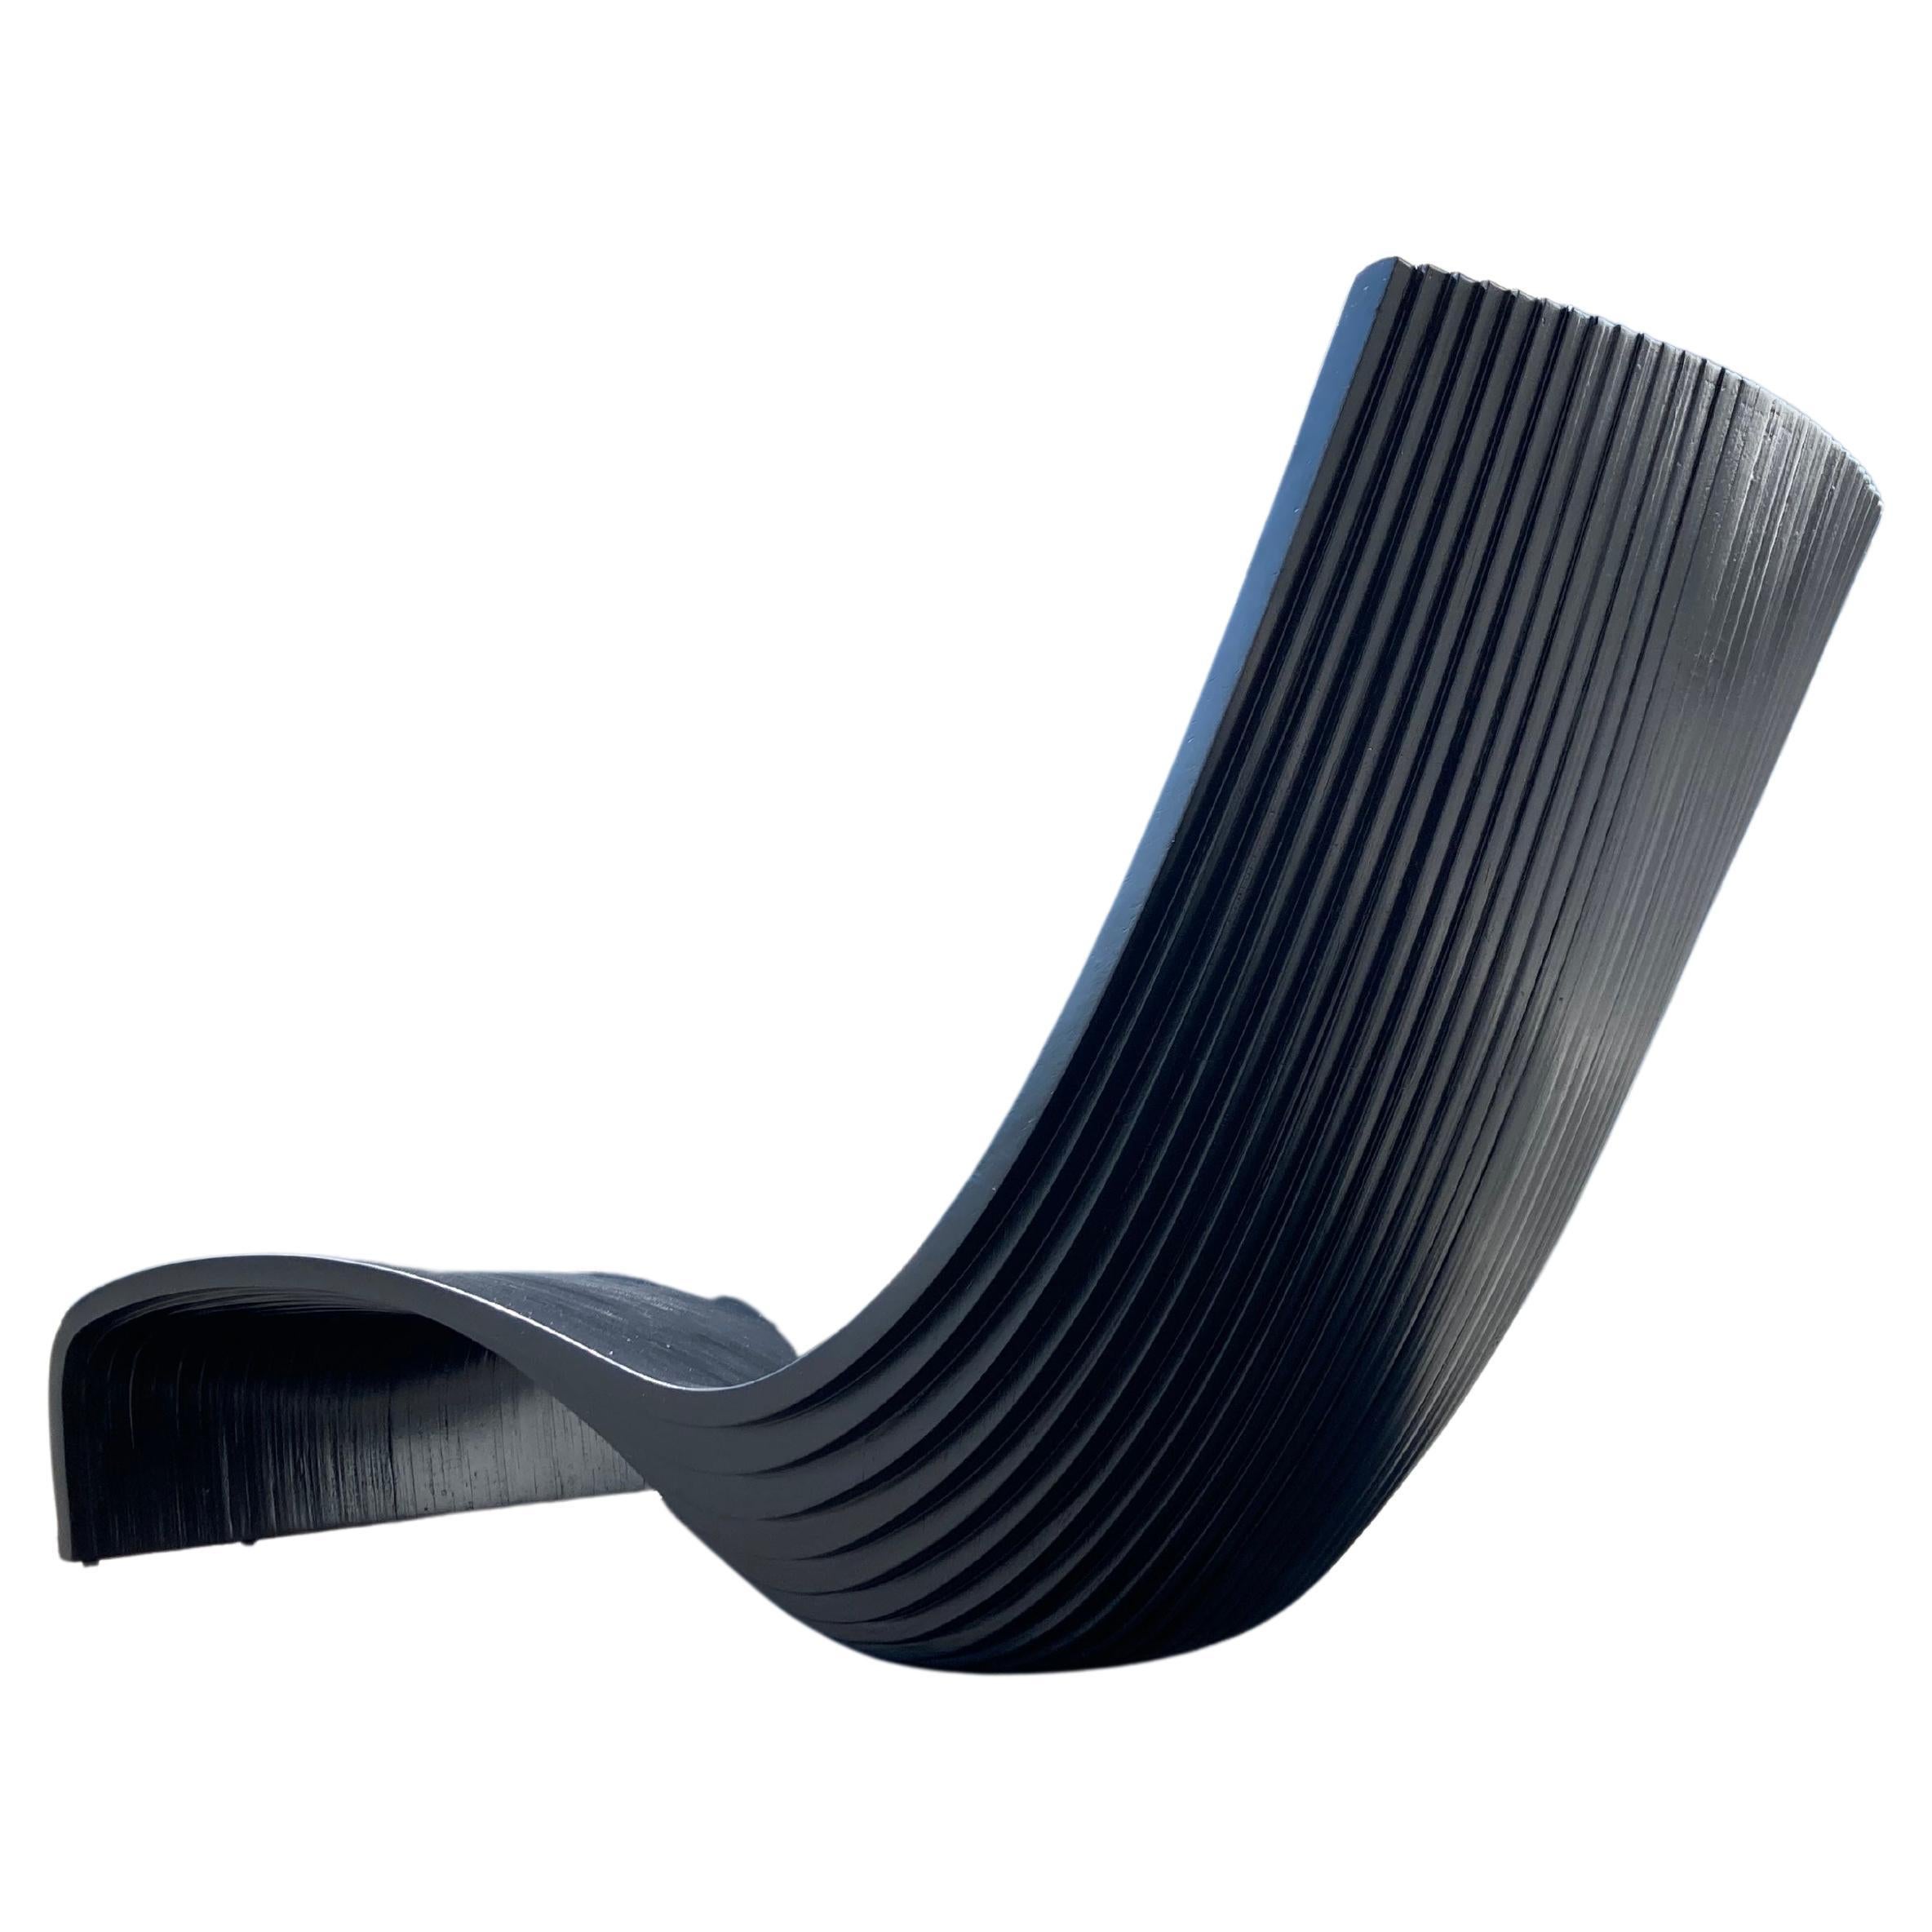 Schwarzer Lolo-Stuhl von Piegatto